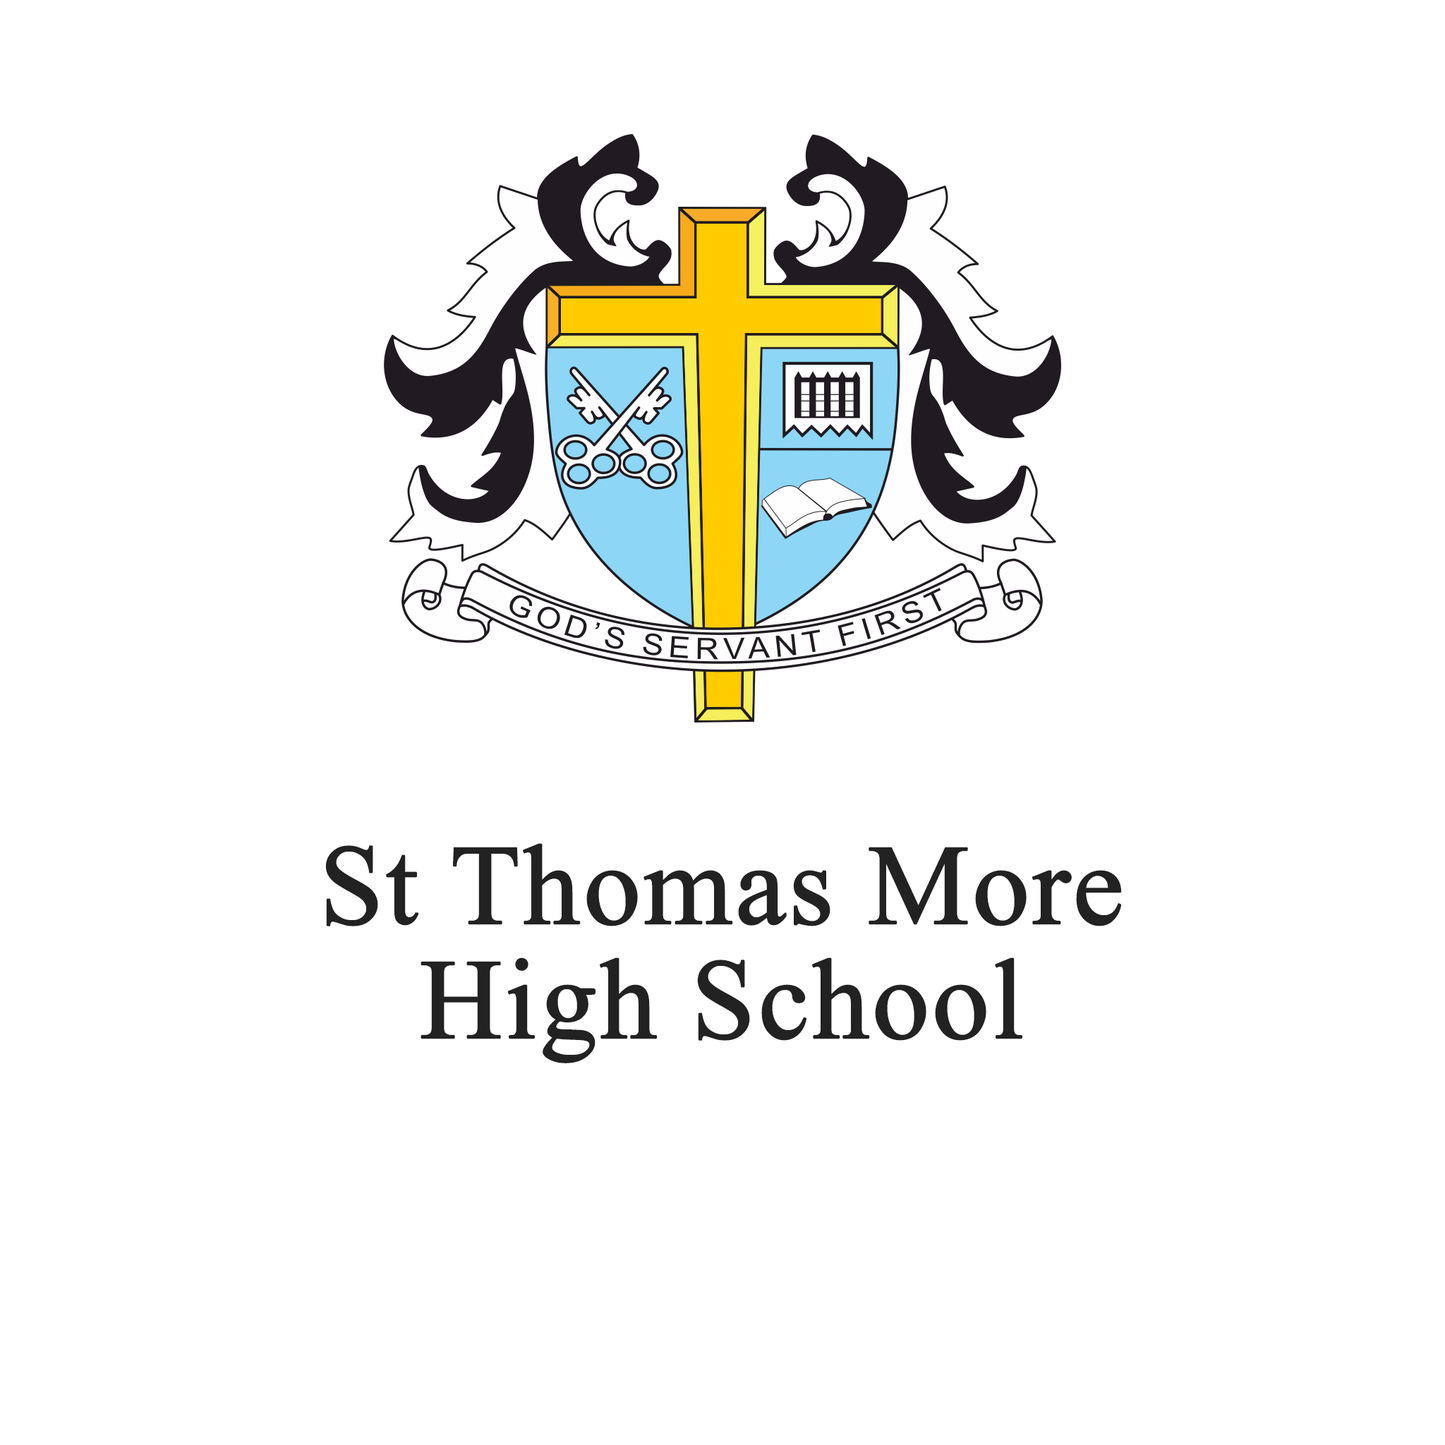 St. Thomas More High School: 11+ English (2015) 